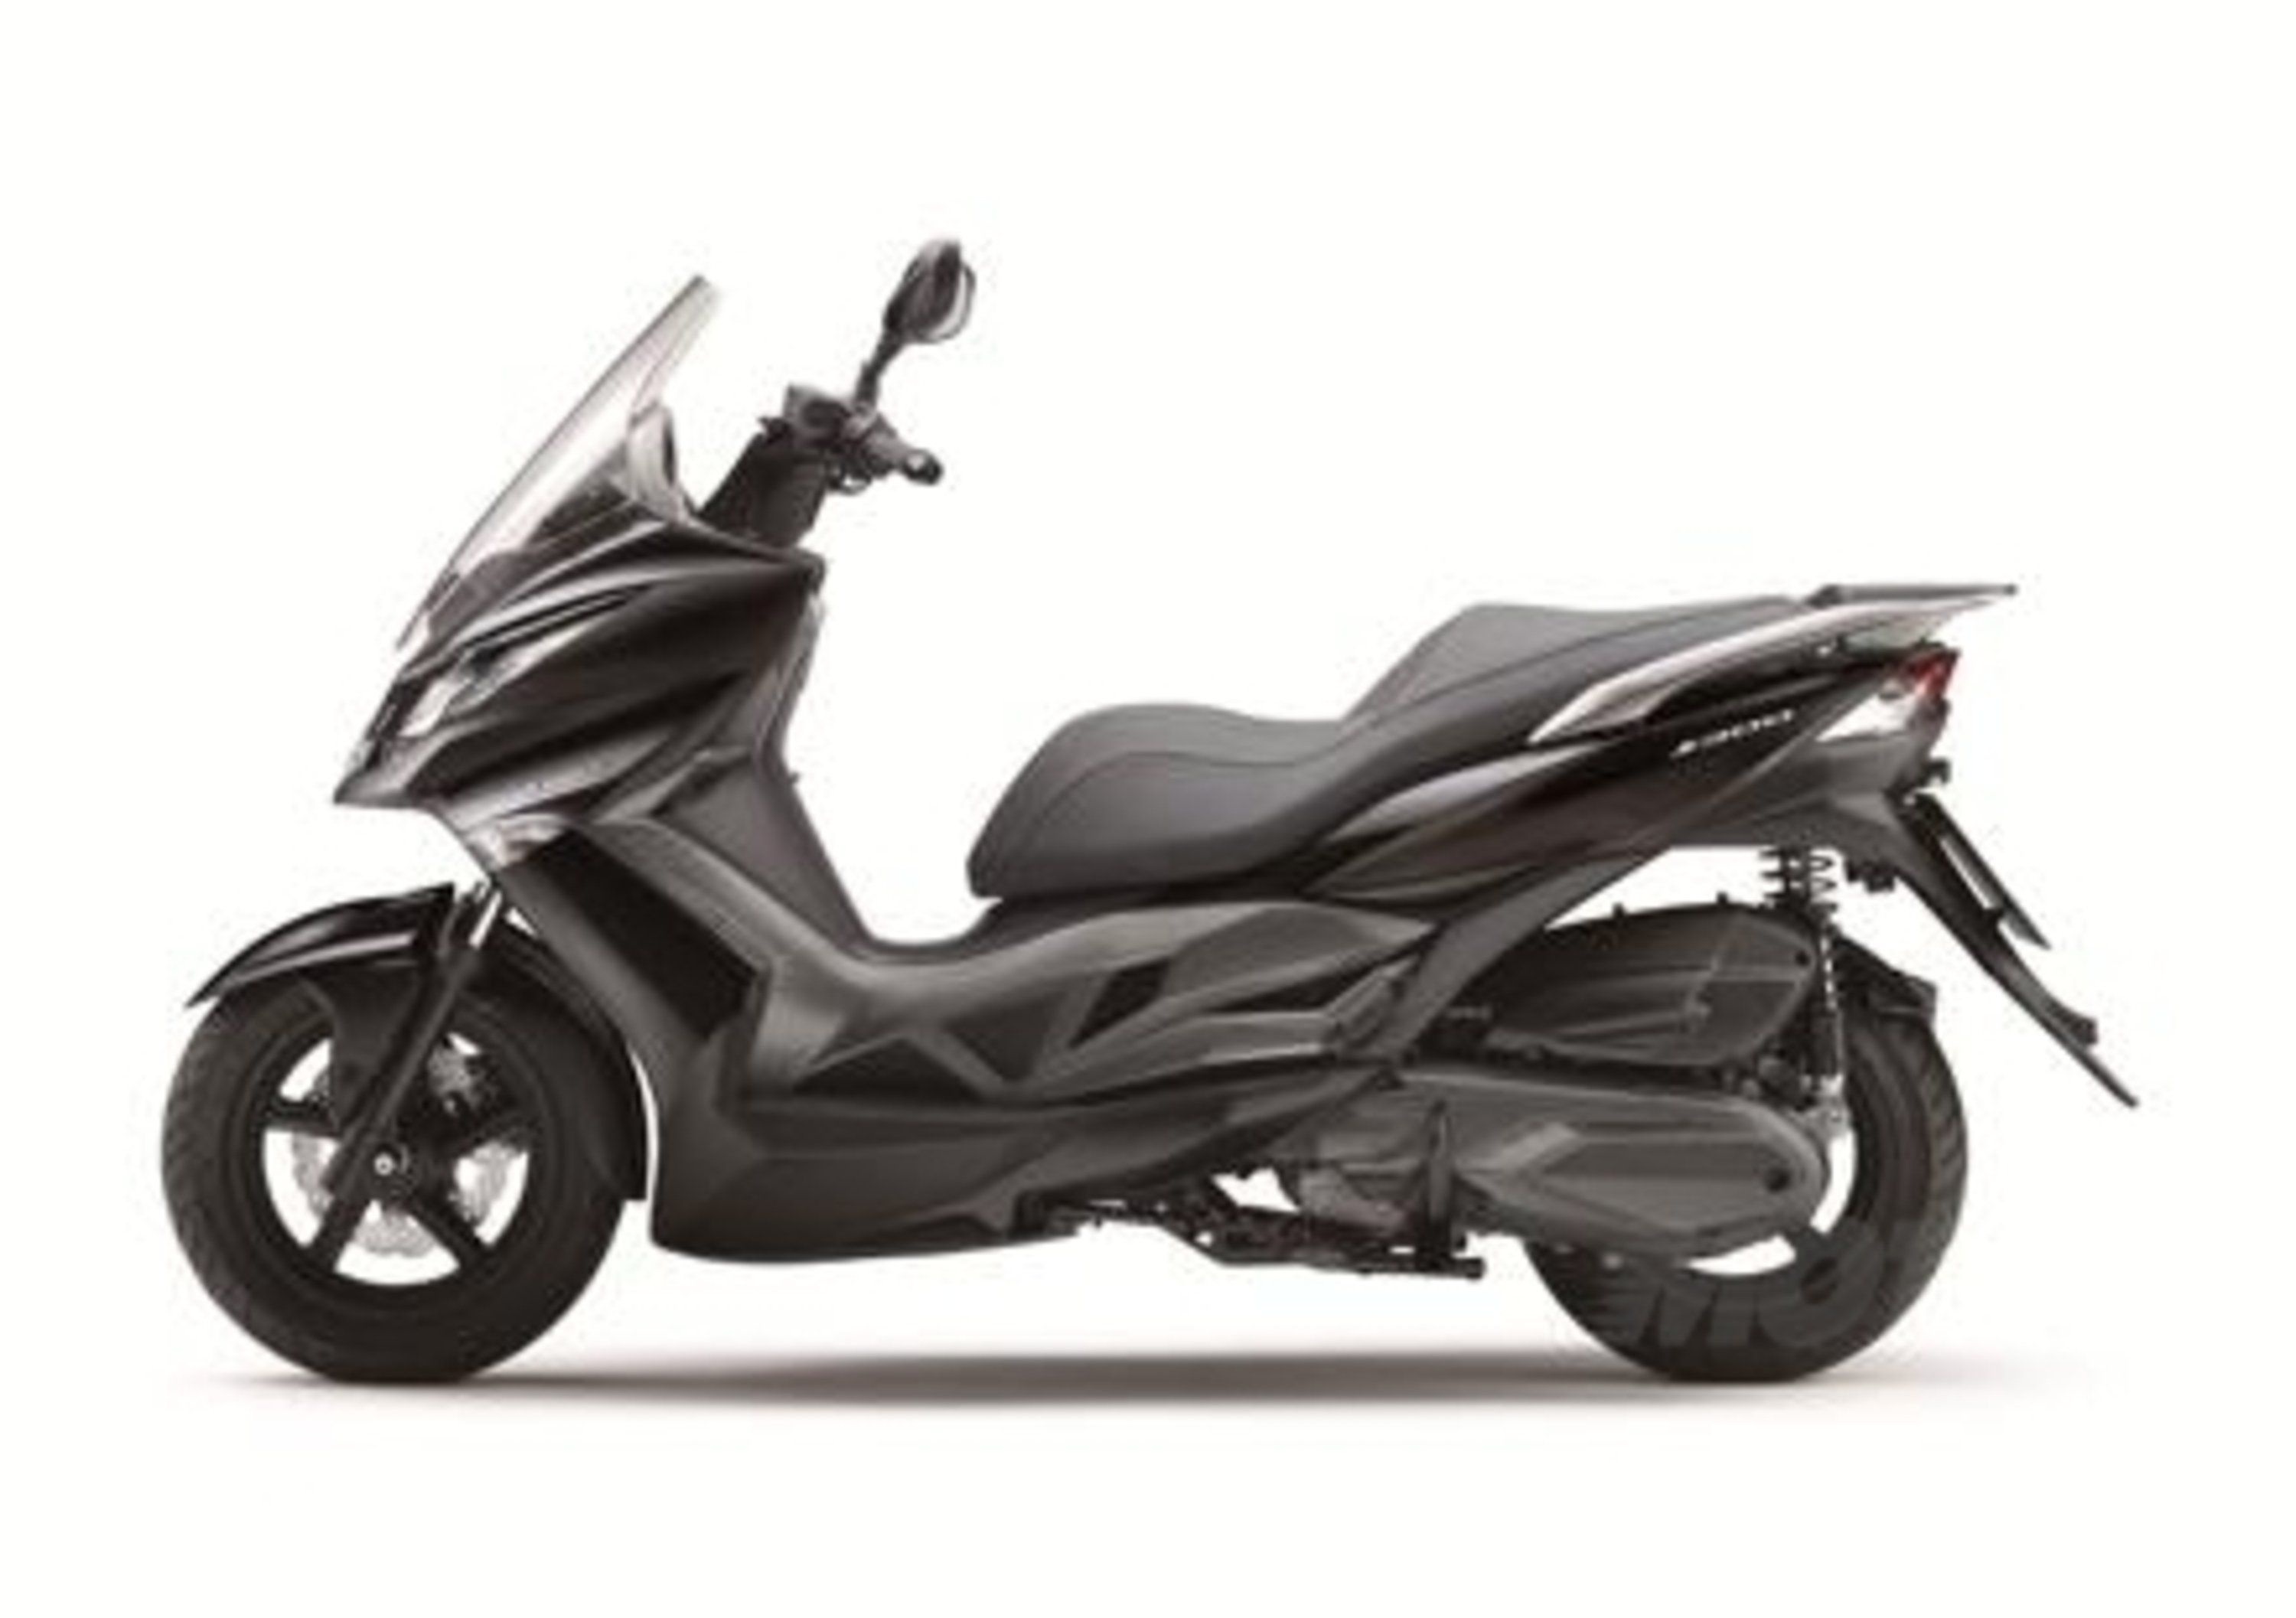 Kawasaki offre 4 anni di garanzia e bauletto in omaggio per lo scooter J300